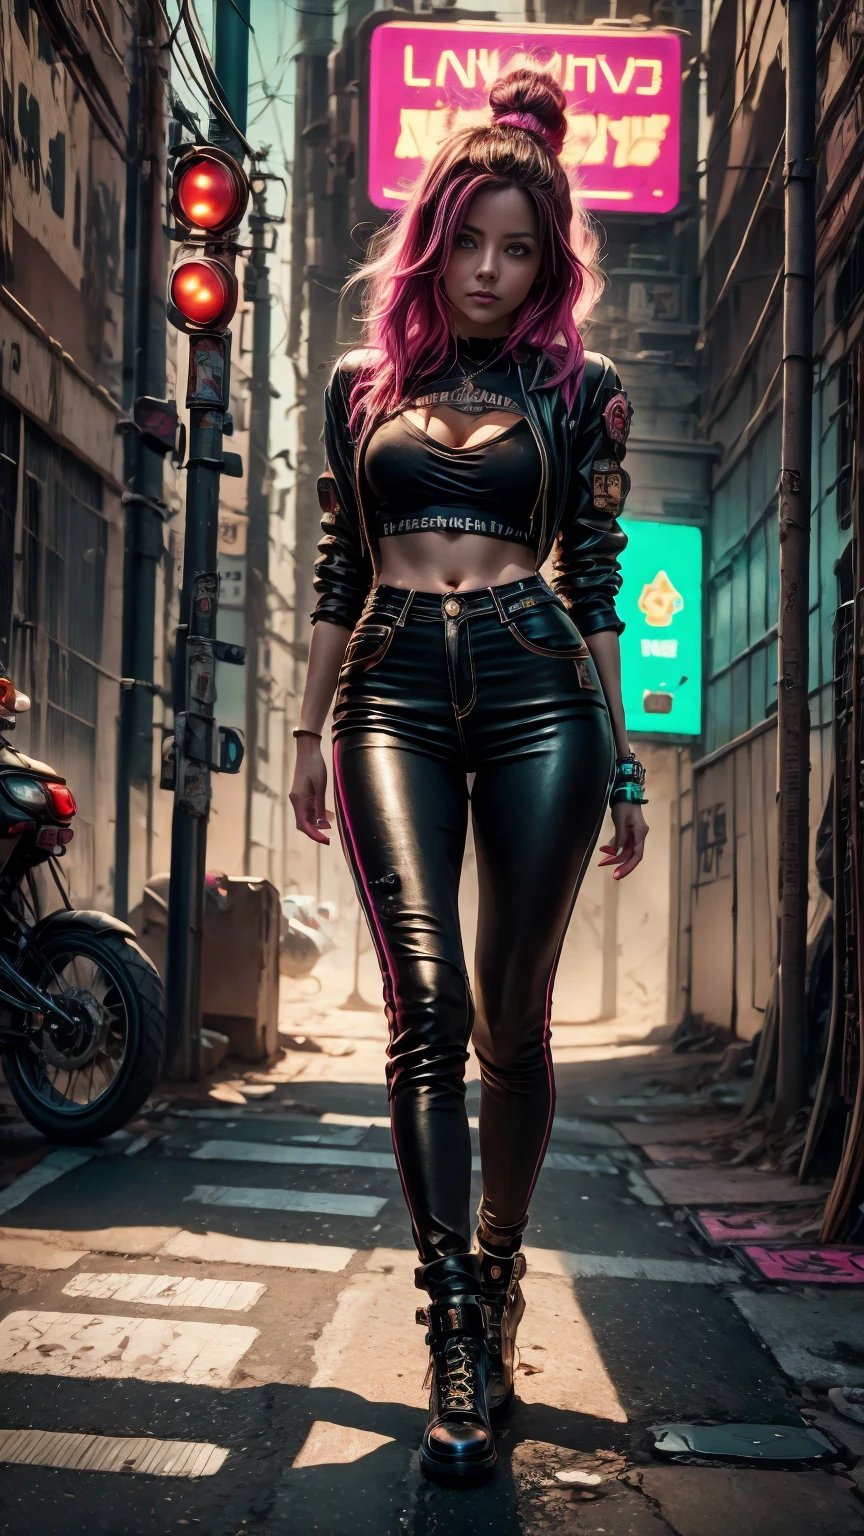 Un primer plano de Kristin Kreuk con un traje de neón, Ambiente ciberpunk, cyberpunk con luces de neón, Luz cyberpunk brillante, agachado,Vibraciones ciberpunk, iluminación ciberpunk, estilo ciberpunk, ciberpunk de neón style, en el estilo cyberpunk, mira ciberpunk, chica soñadora cyberpunk, La foto de Cyberpunk., ciberpunk de neón, estética ciberpunk, ropa de calle ciberpunk, estética ciberpunk, Estilo artístico ciberpunk, Portero del streetwear cyberpunk,sabes, dedos perfectos,color de pelo de neón, Textura de detalle, detalle del cabello,Pantalon long noir fluo, hermoso rostro,pelaje ondulado,Zapatos negros neón detallados..,